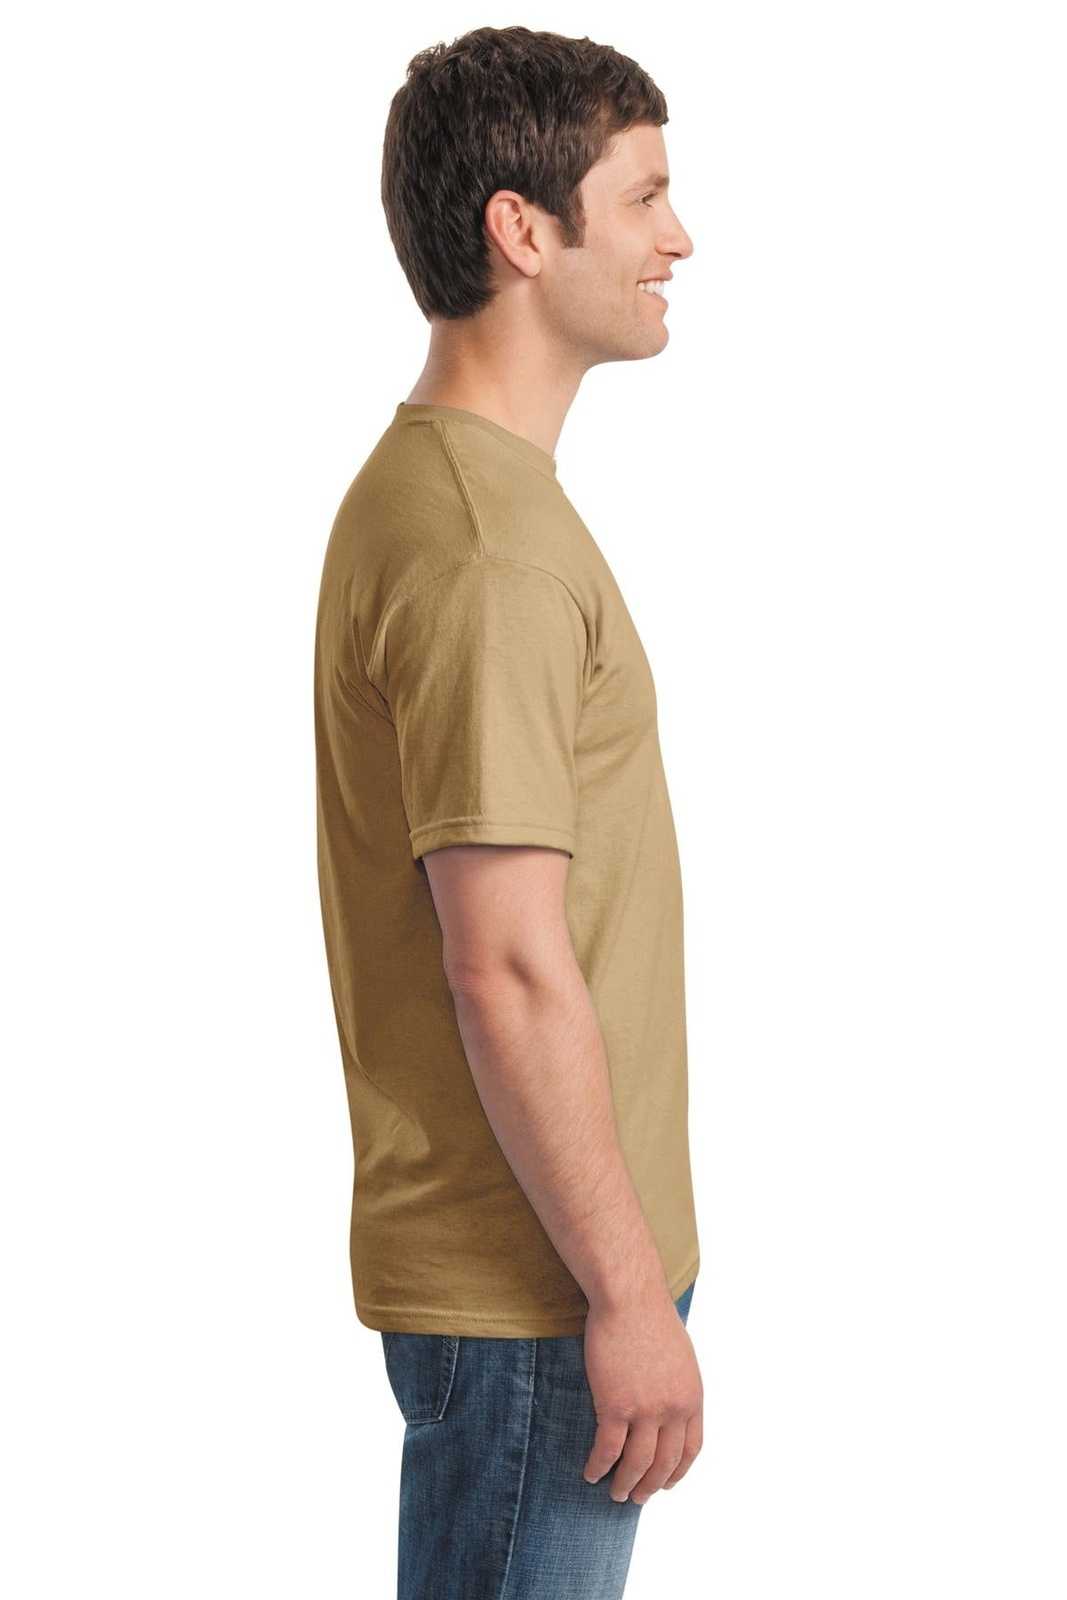 Gildan 5000 Heavy Cotton 100% Cotton T-Shirt - Old Gold - HIT a Double